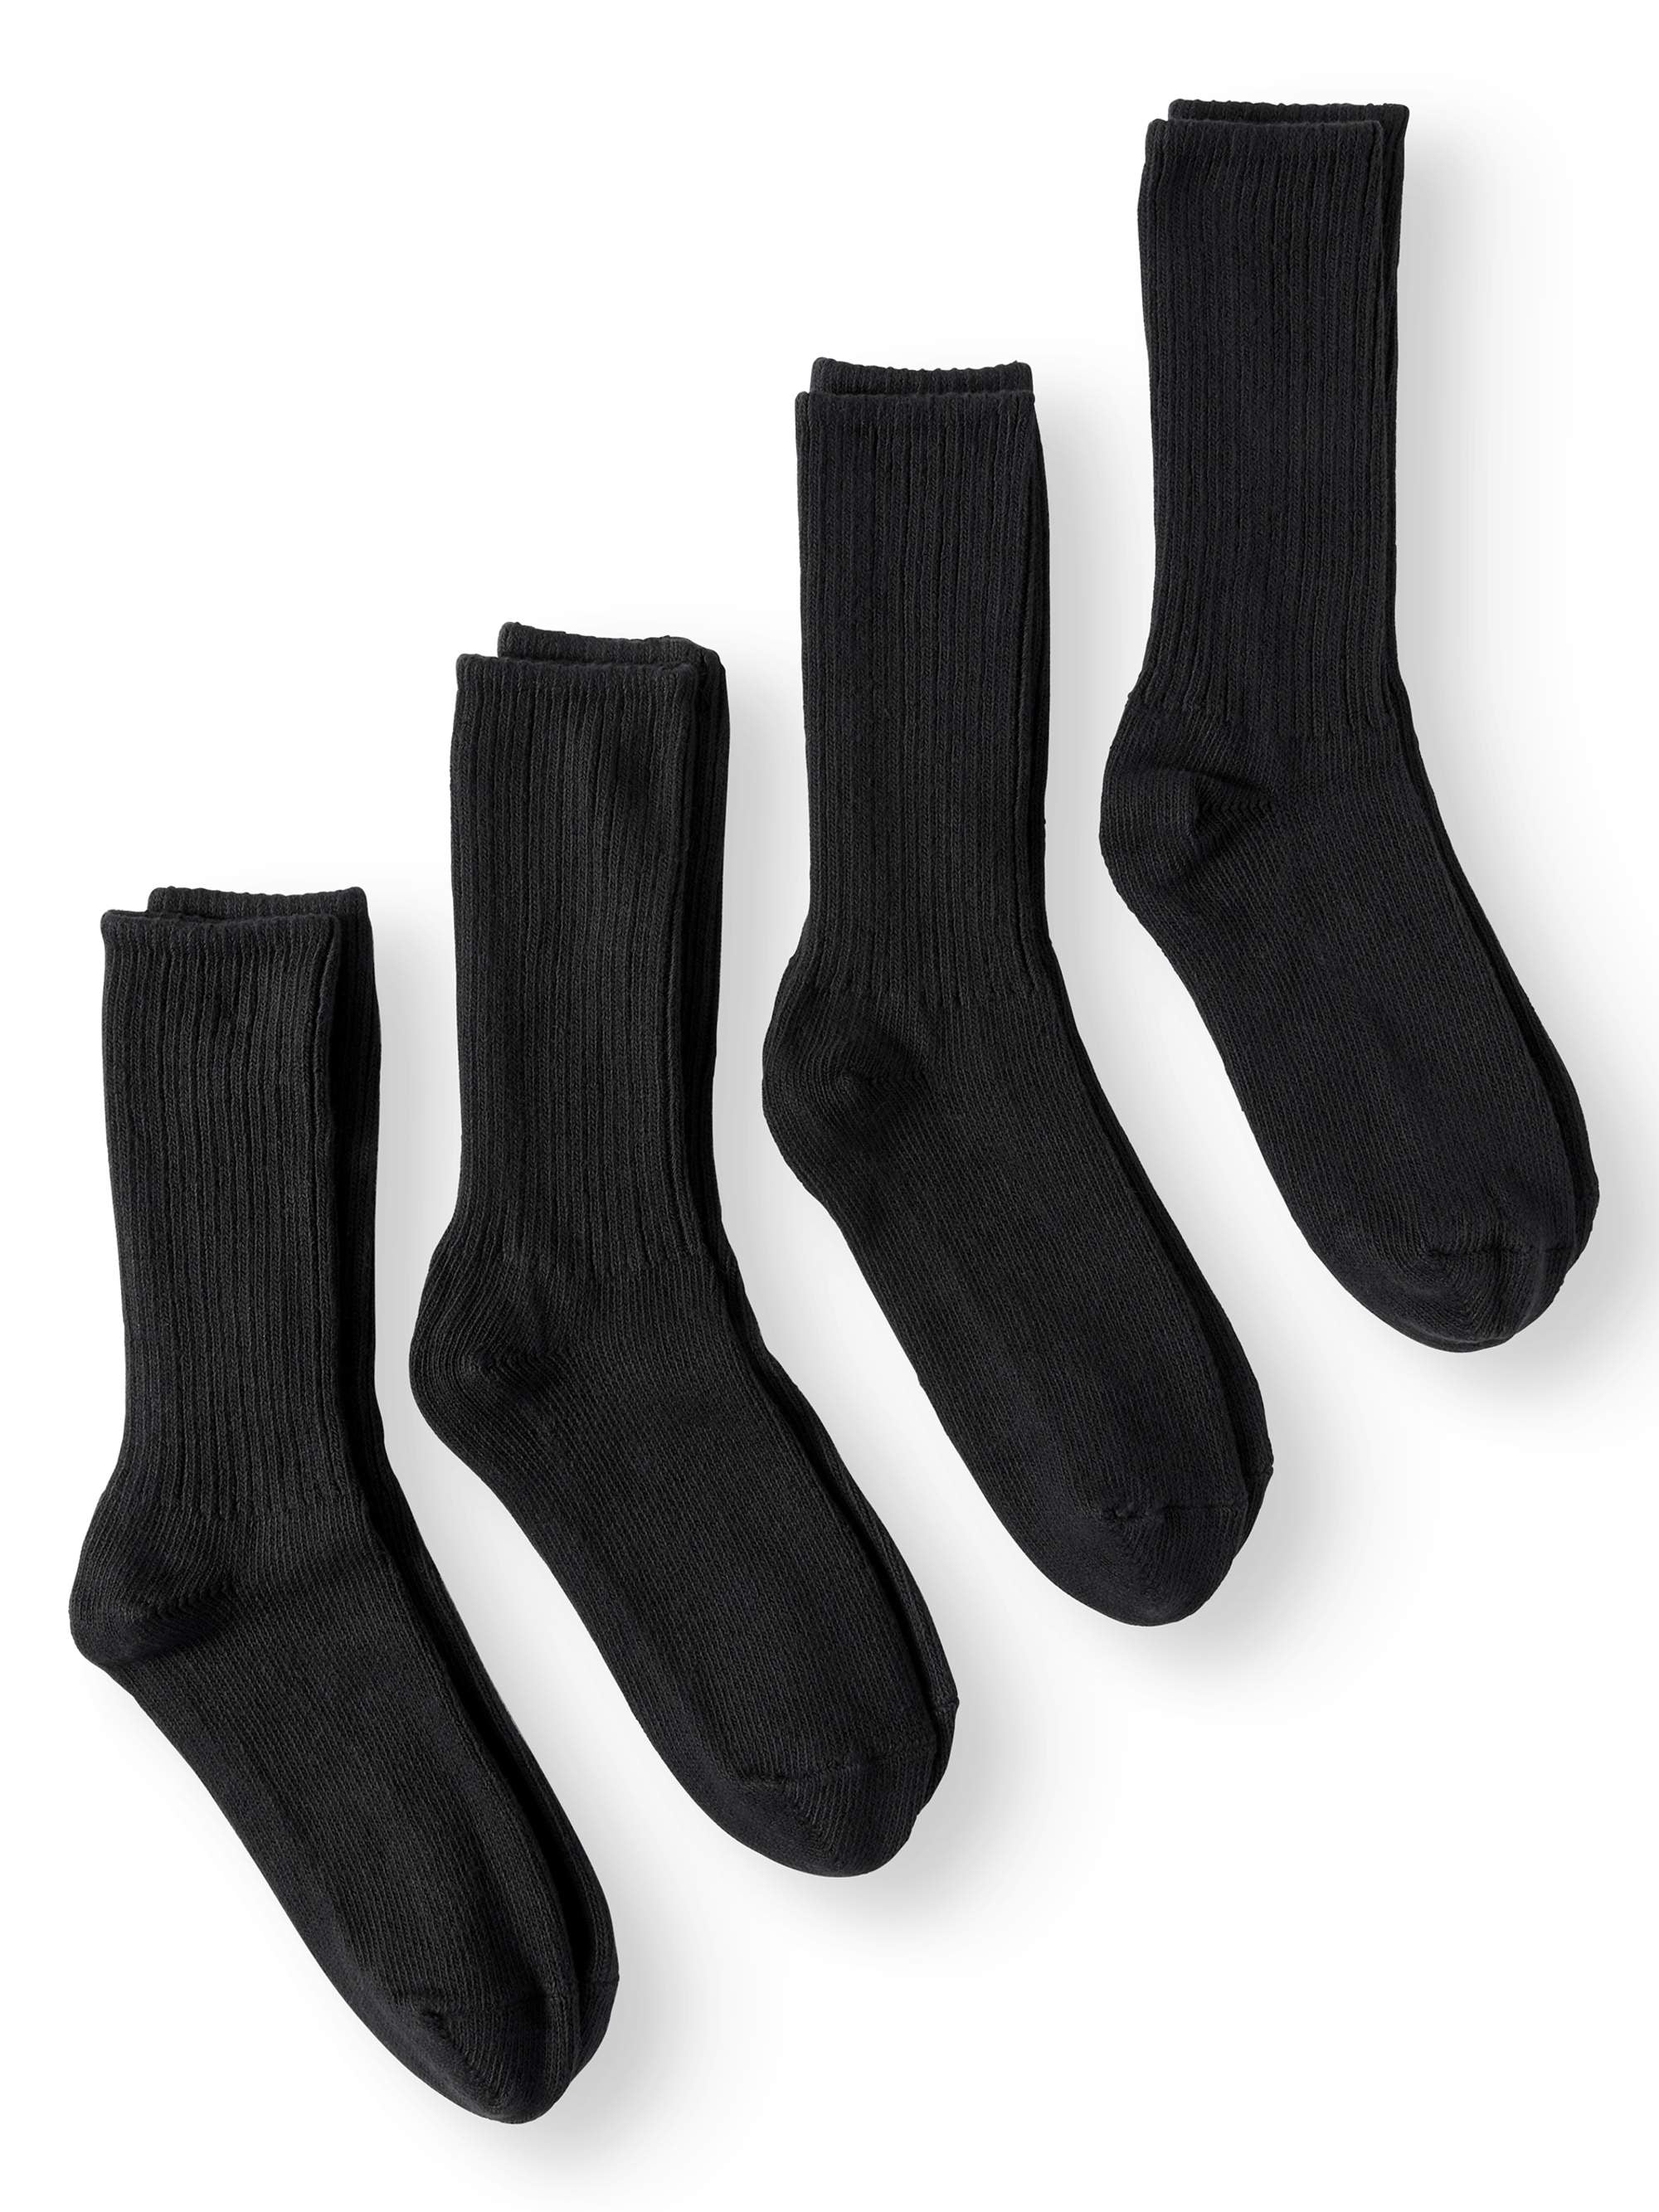 Jefferies Socks Big Boys Rib Dress Crew Socks Pack of 3 